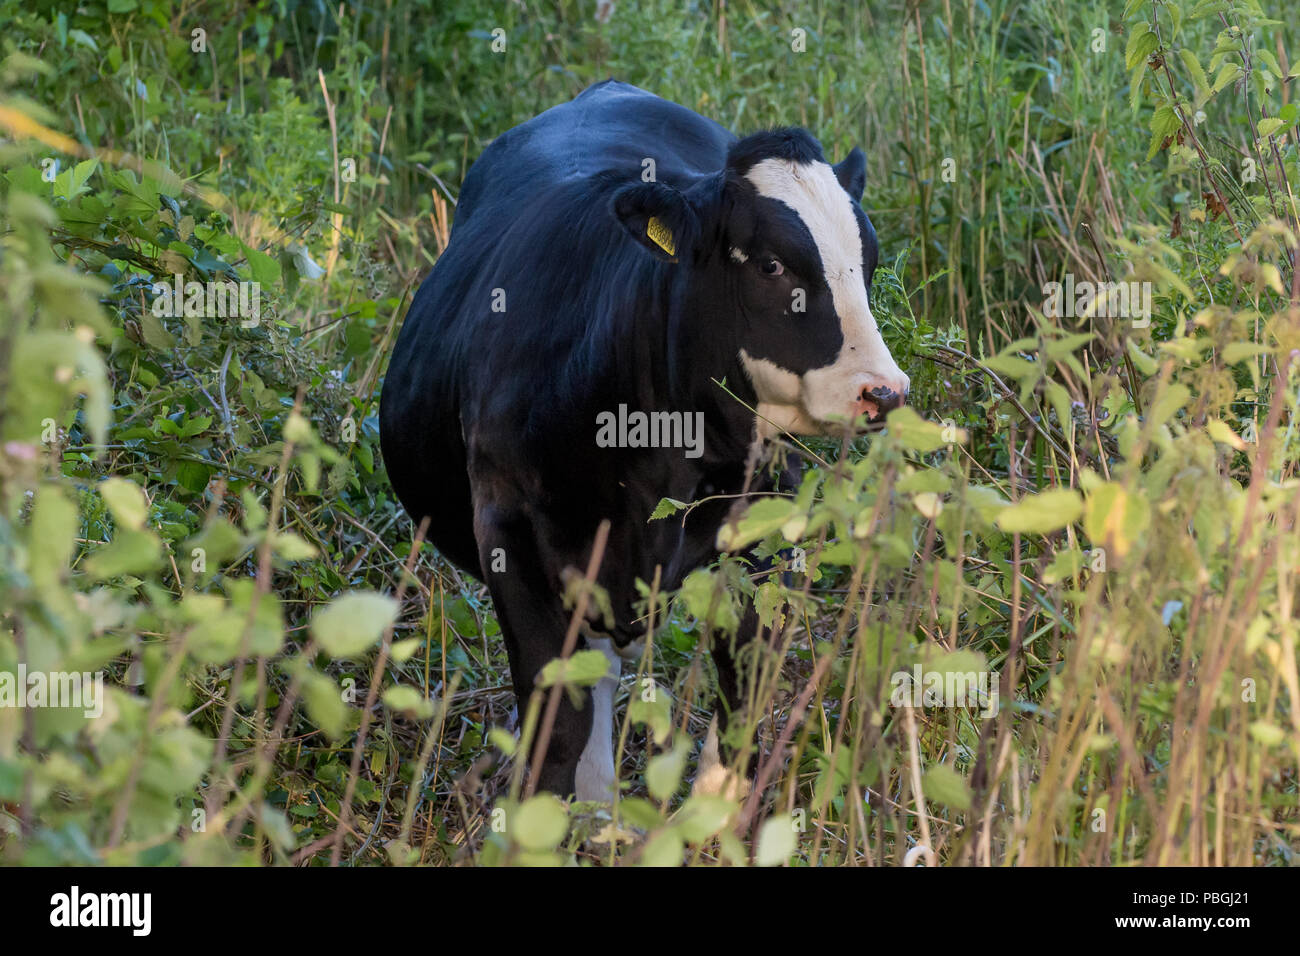 Bianco e nero facce di vacca la telecamera attraverso piante verdi, con giallo di marchi auricolari e nero vola sulla sua faccia Foto Stock